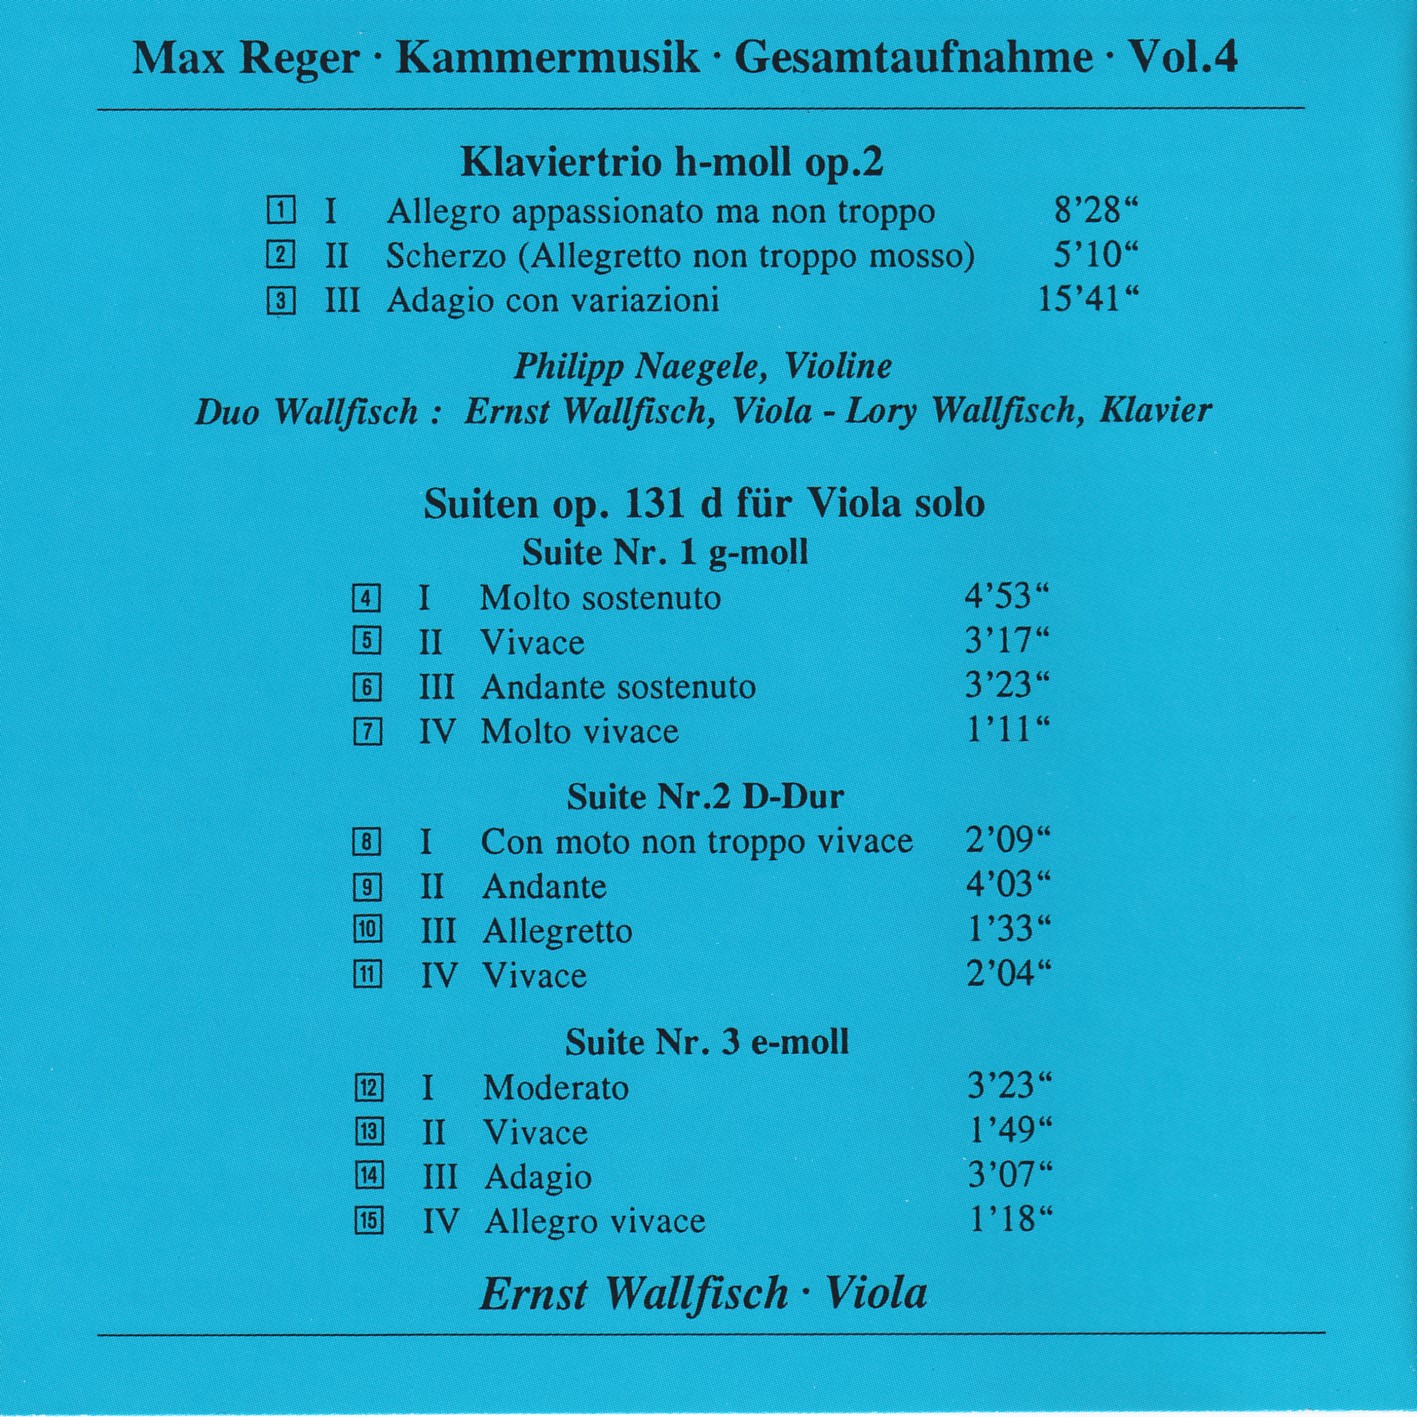 Max Reger - Kammermusik komplett Vol. 4